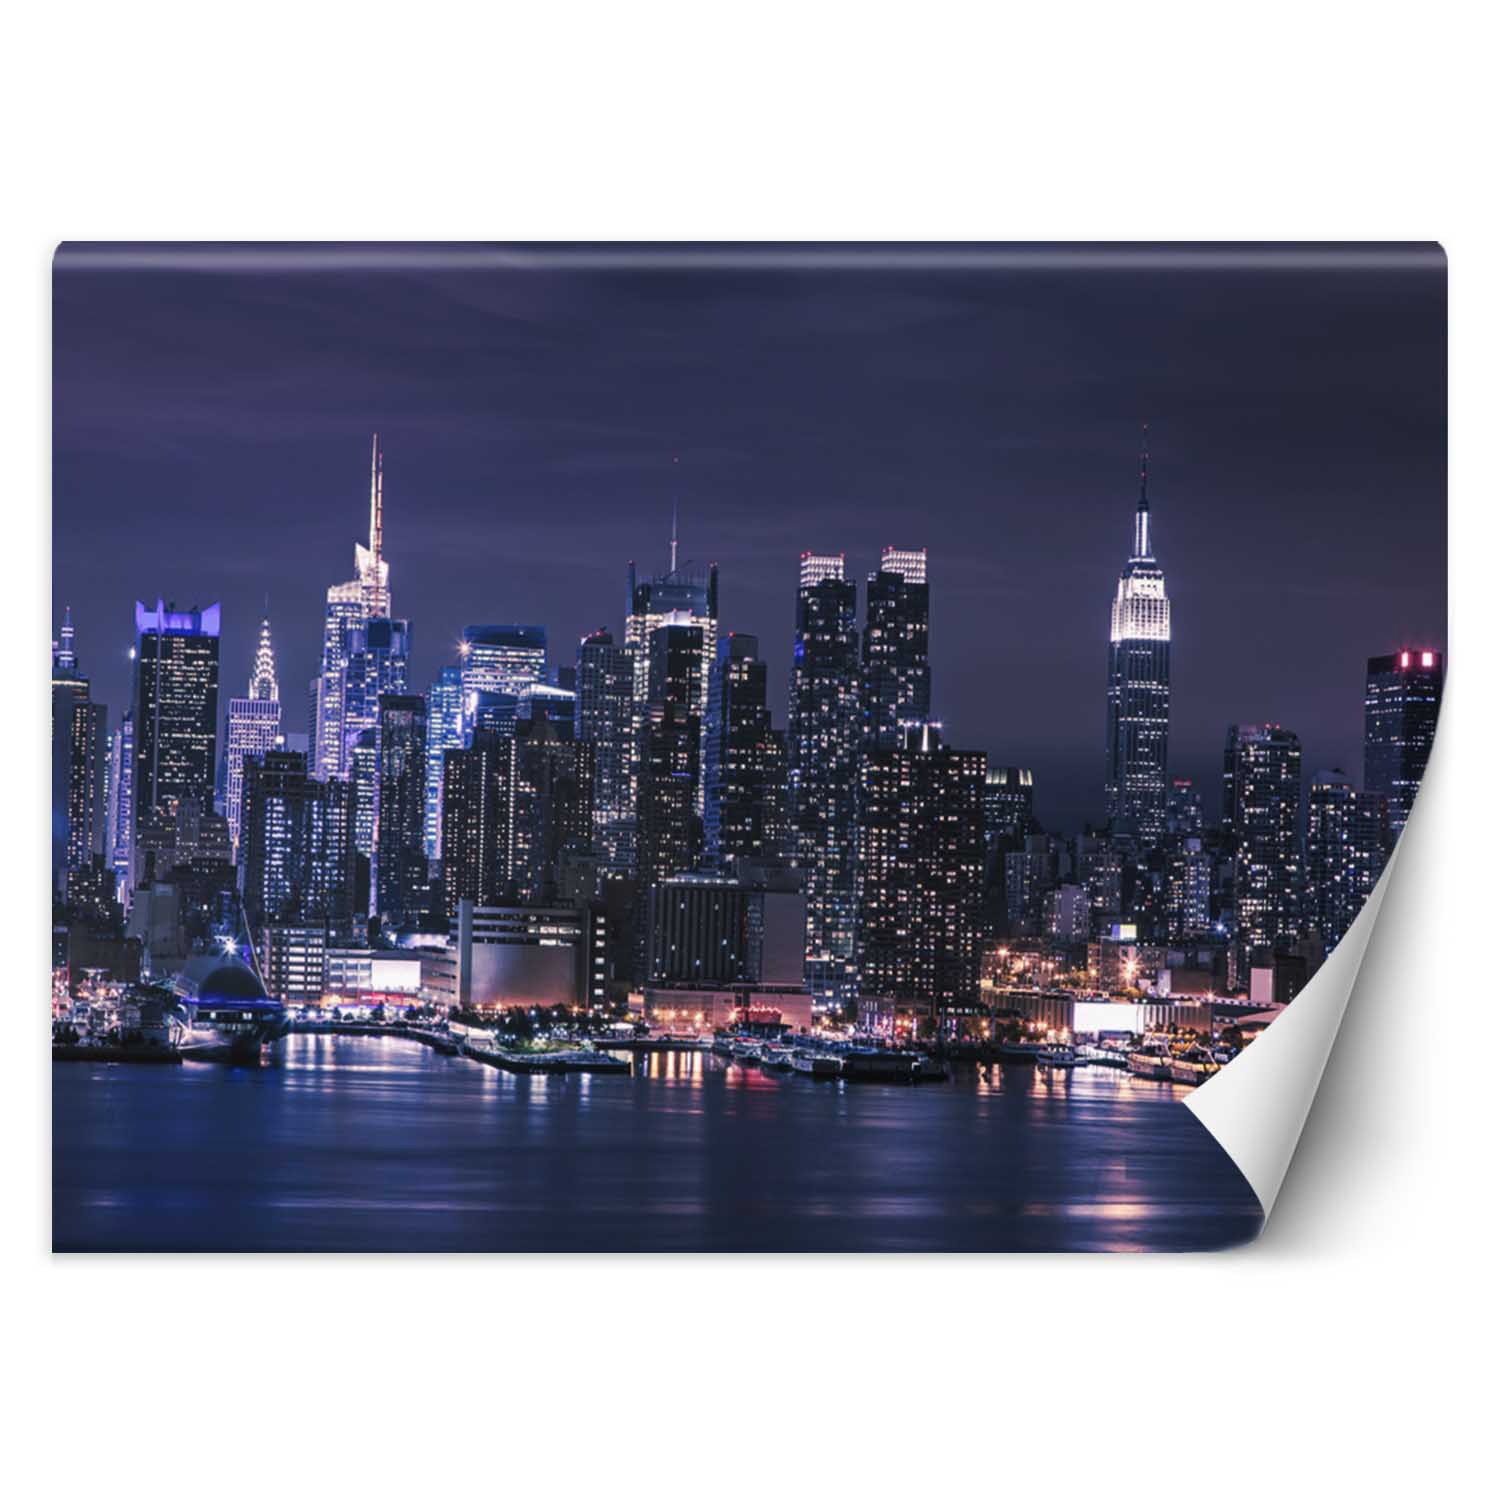 Trend24 – Behang – New York ‘S Nachts – Behangpapier – Fotobehang – Behang Woonkamer – 450x315x2 cm – Incl. behanglijm